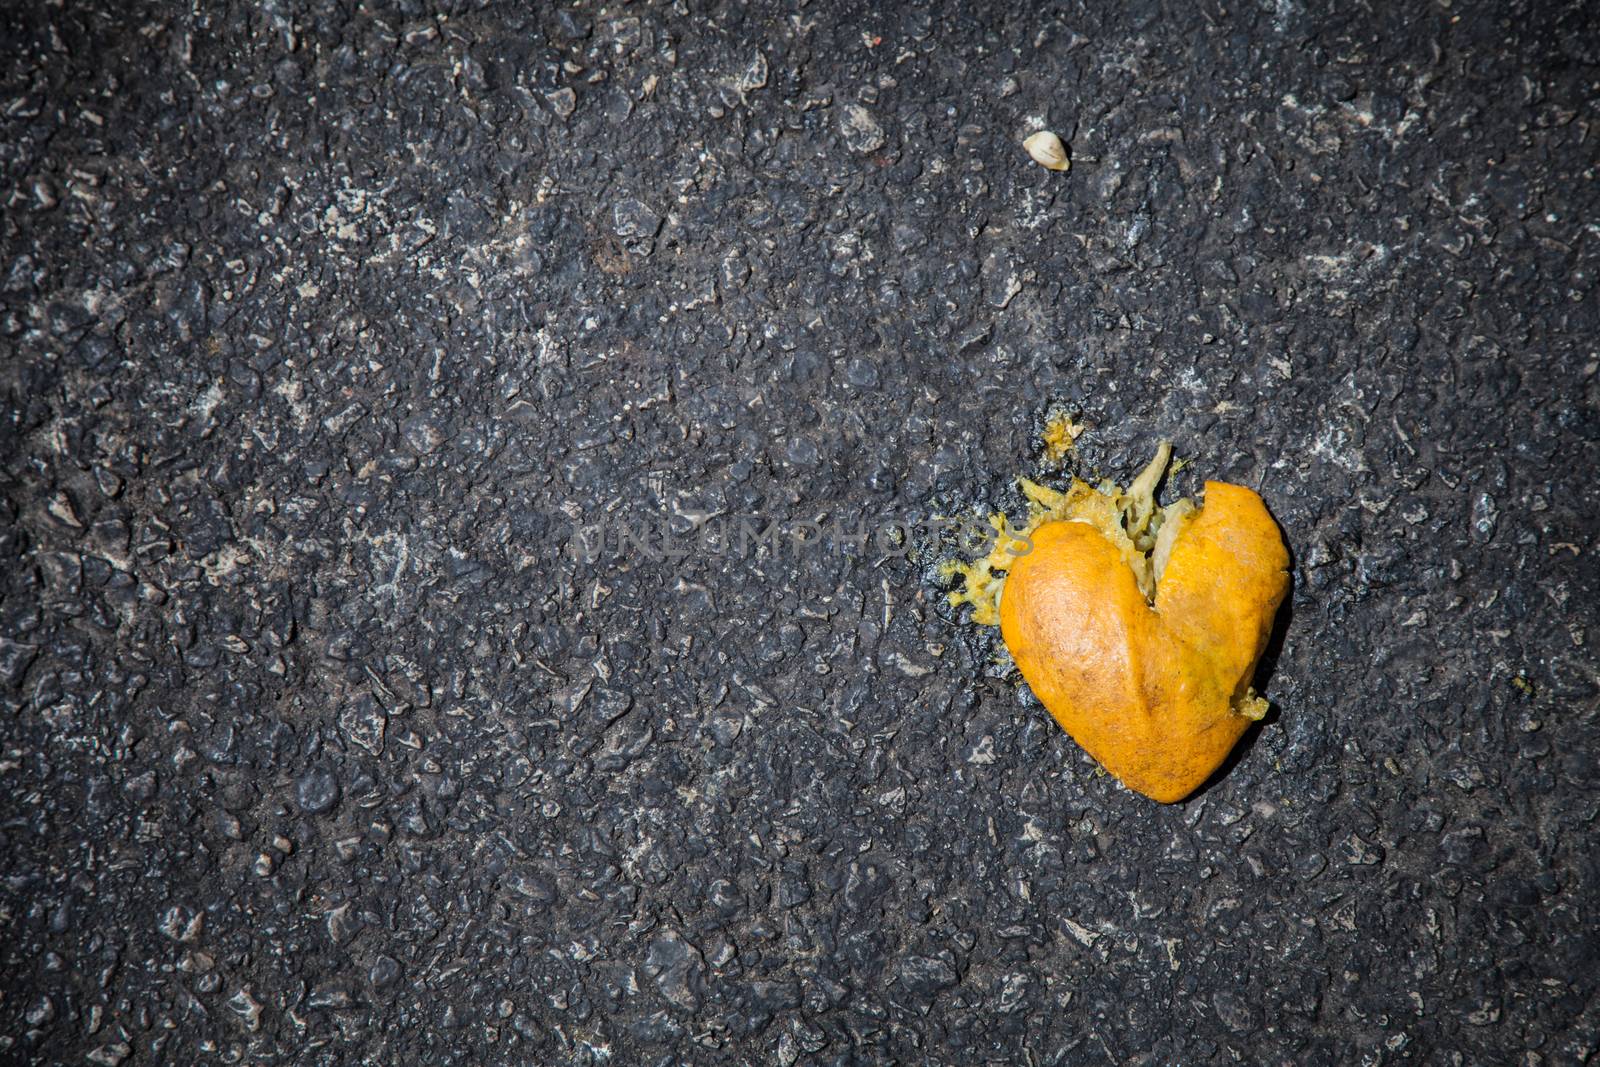 Smashed orange shaped like broken heart on the asphalt by evdayan